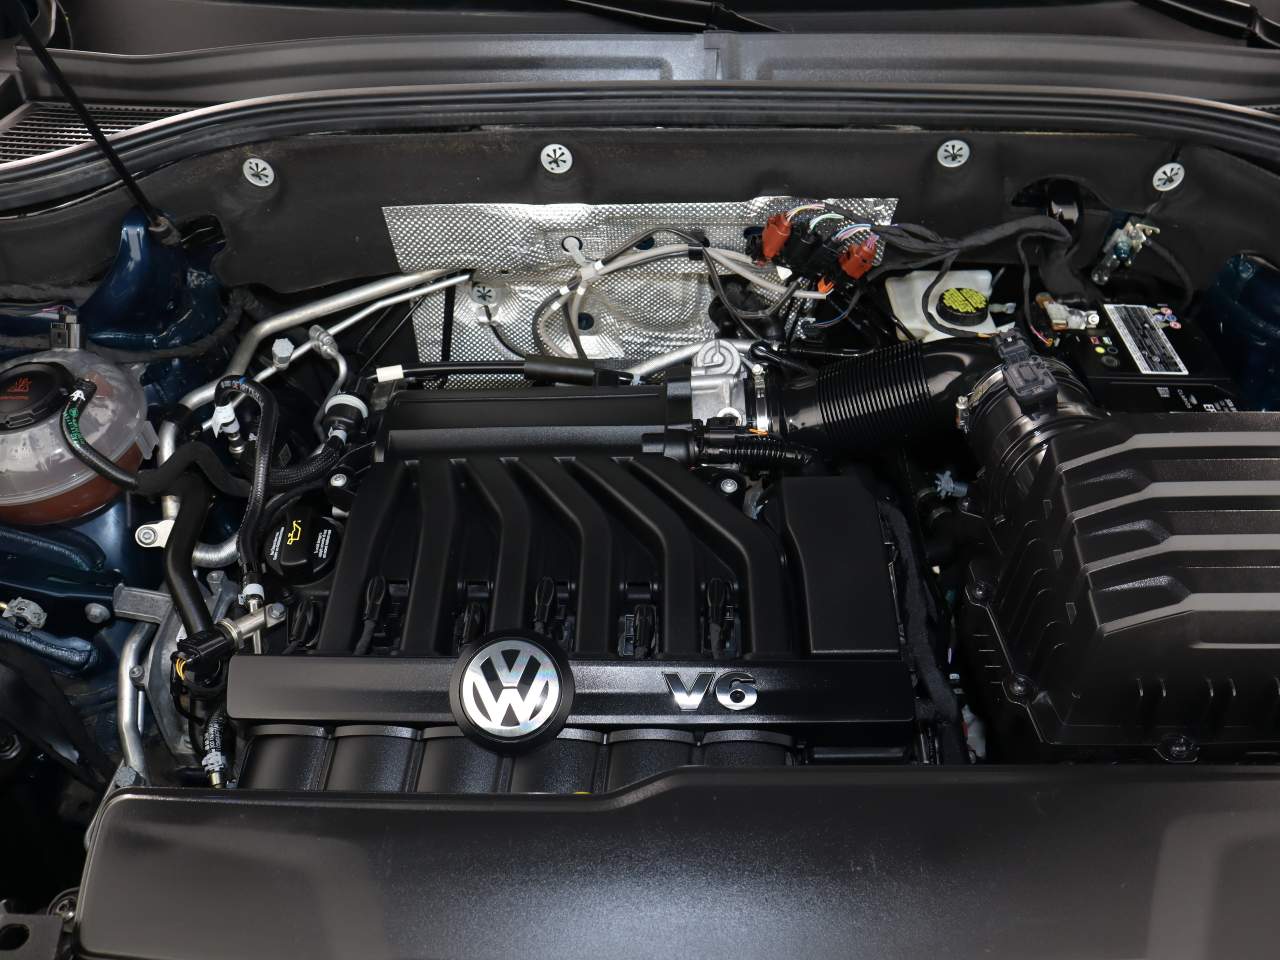 2021 Volkswagen Atlas V6 SE